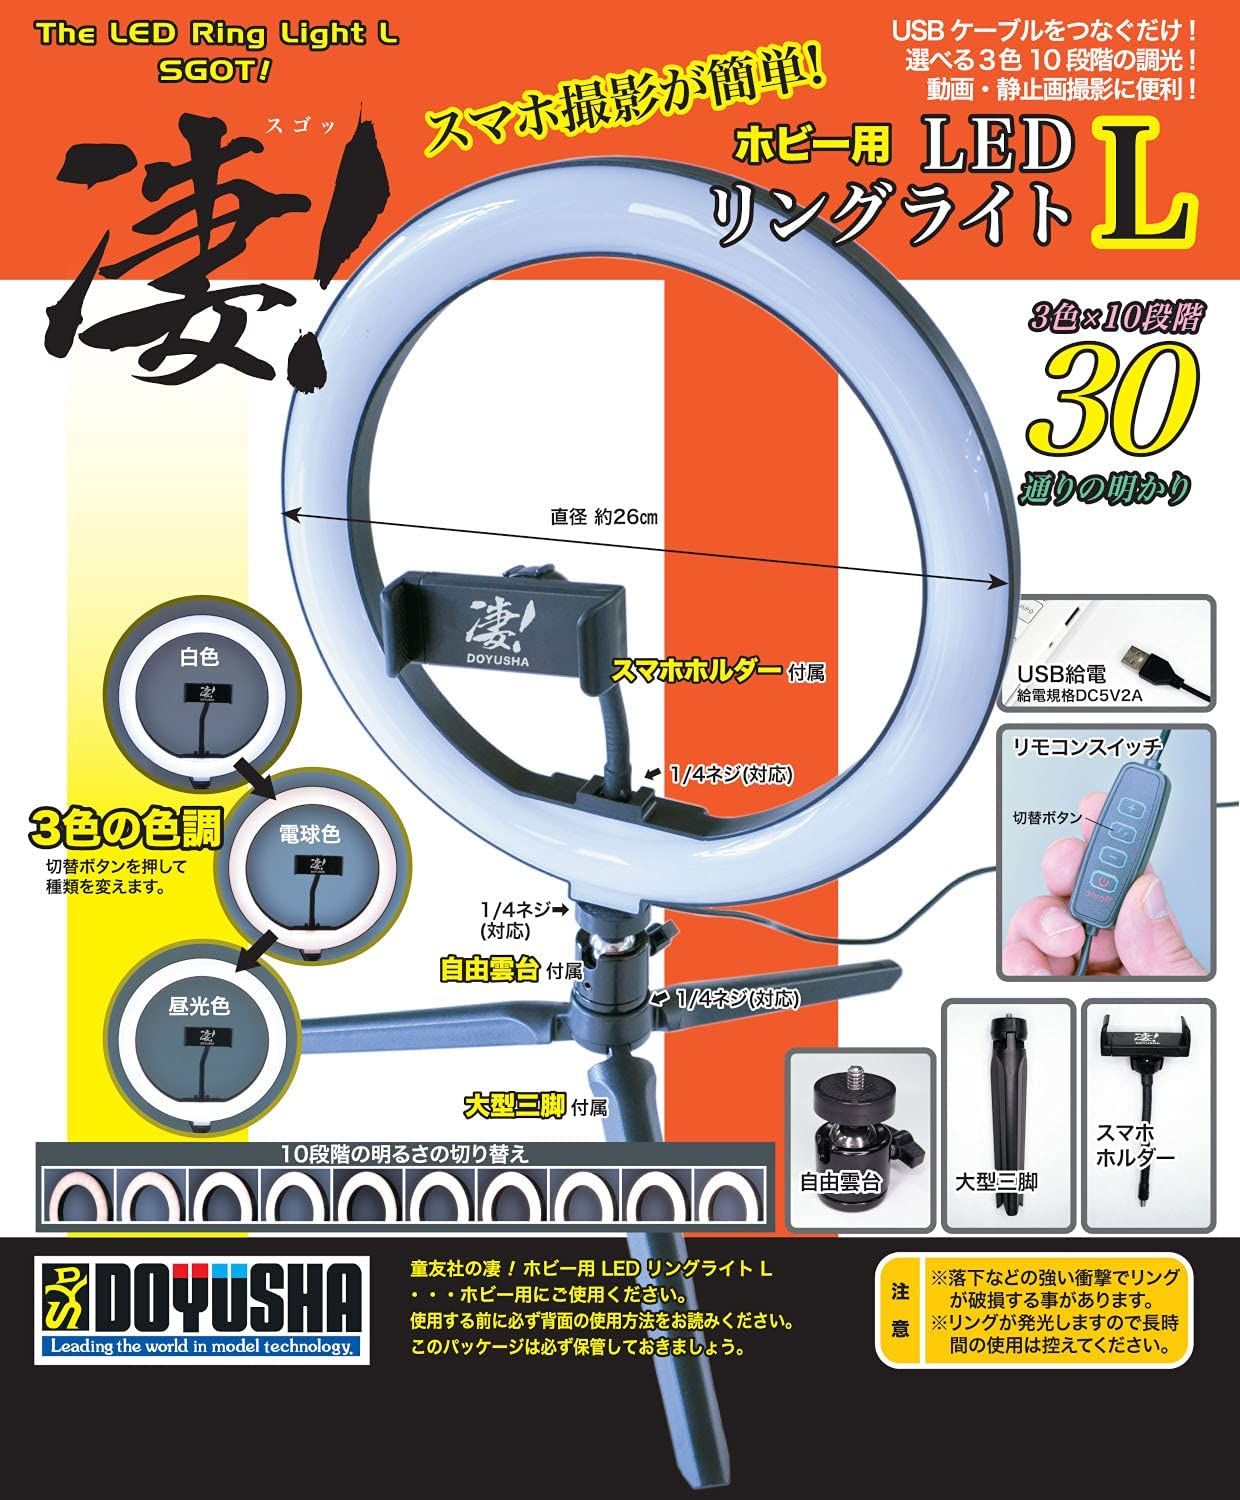 Doyusha 130049 SGOT! LED Ring Light S for Hobby L - BanzaiHobby